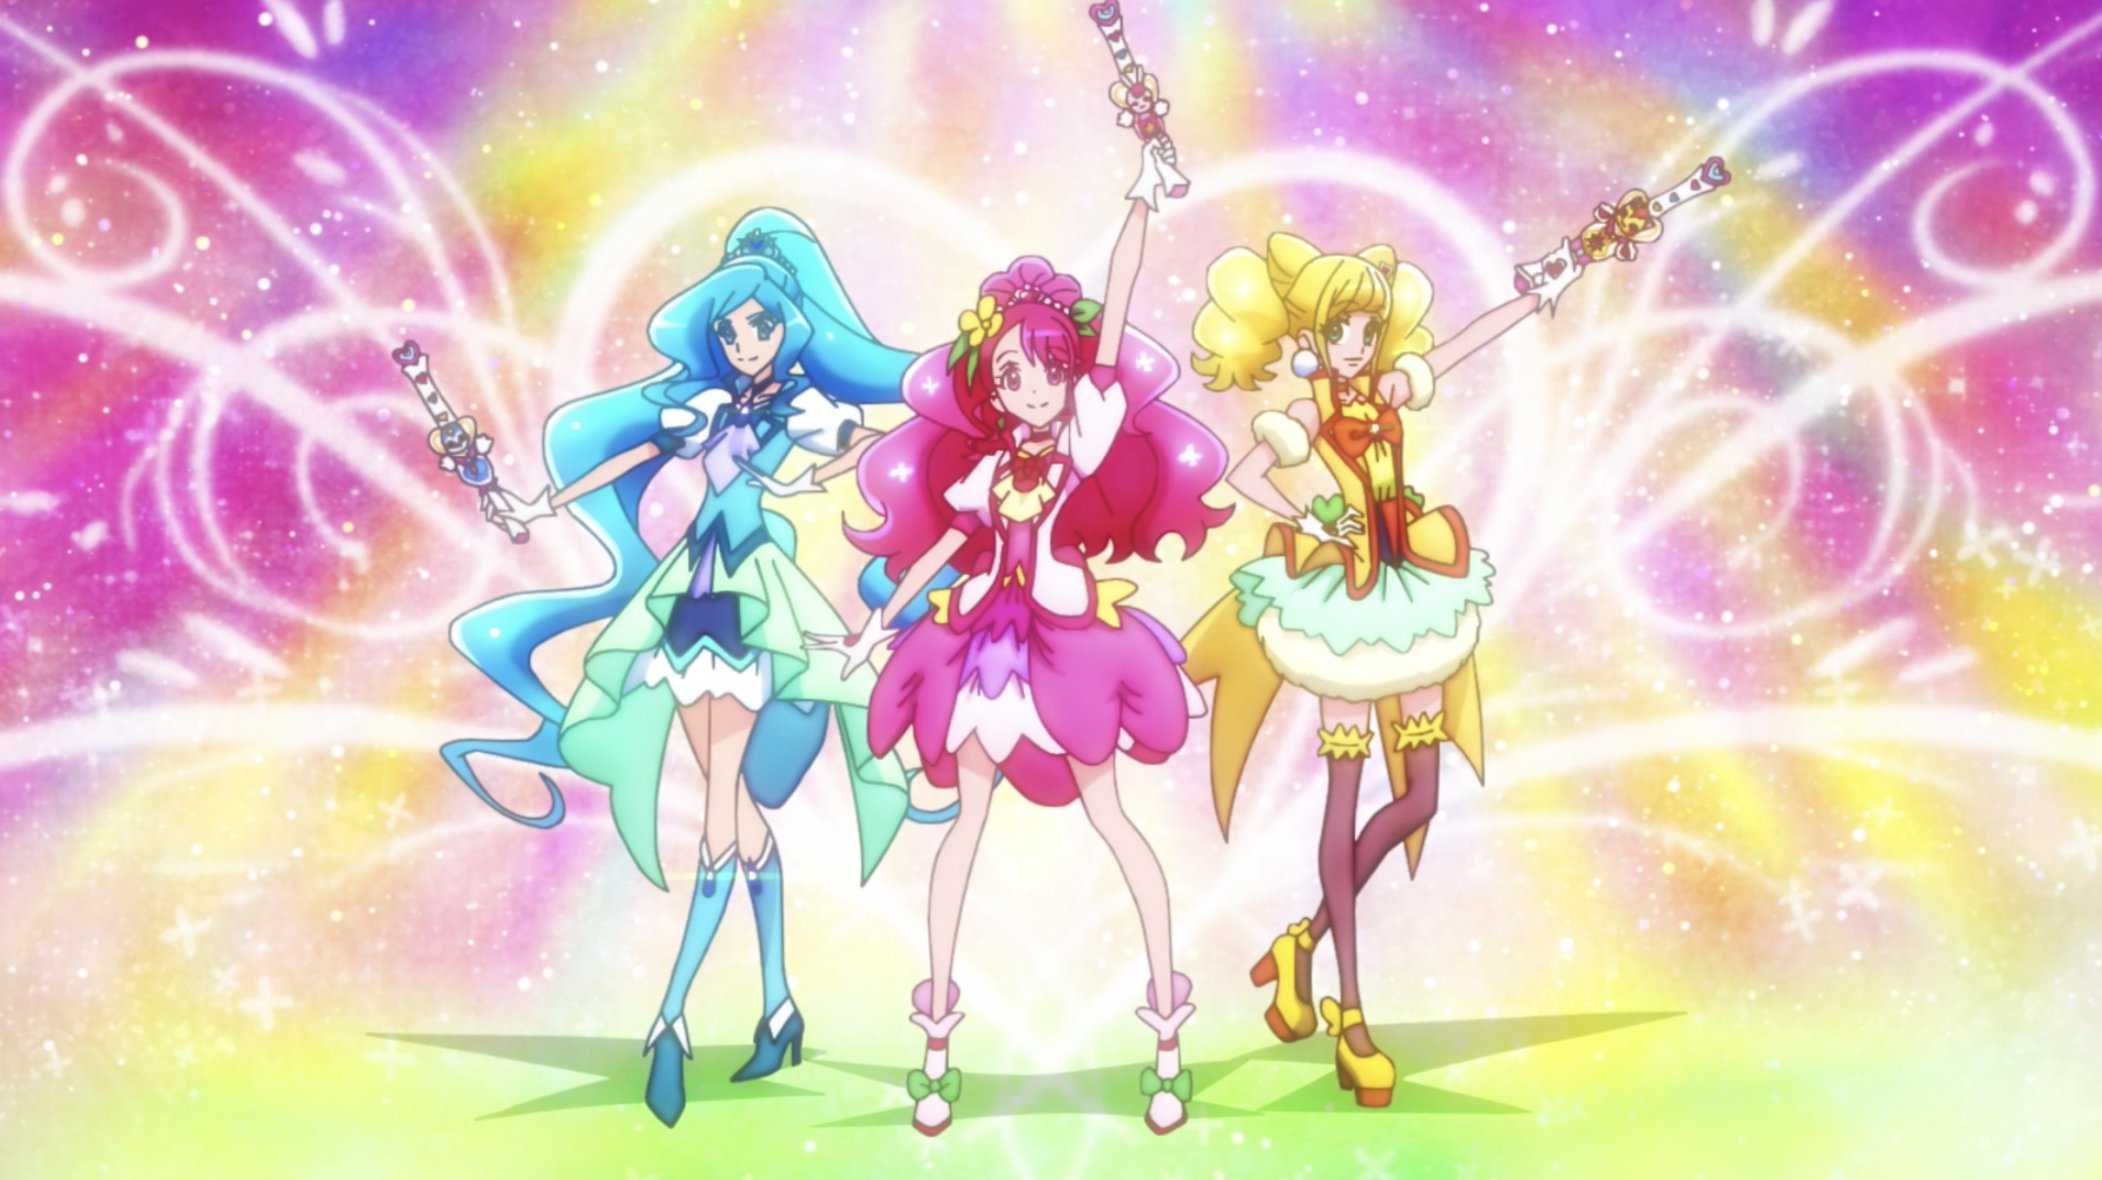 Toei Animation divulga planos para o Brasil em 2019, incluindo retorno de Sailor  Moon para TV aberta e One Piece dublado - Crunchyroll Notícias